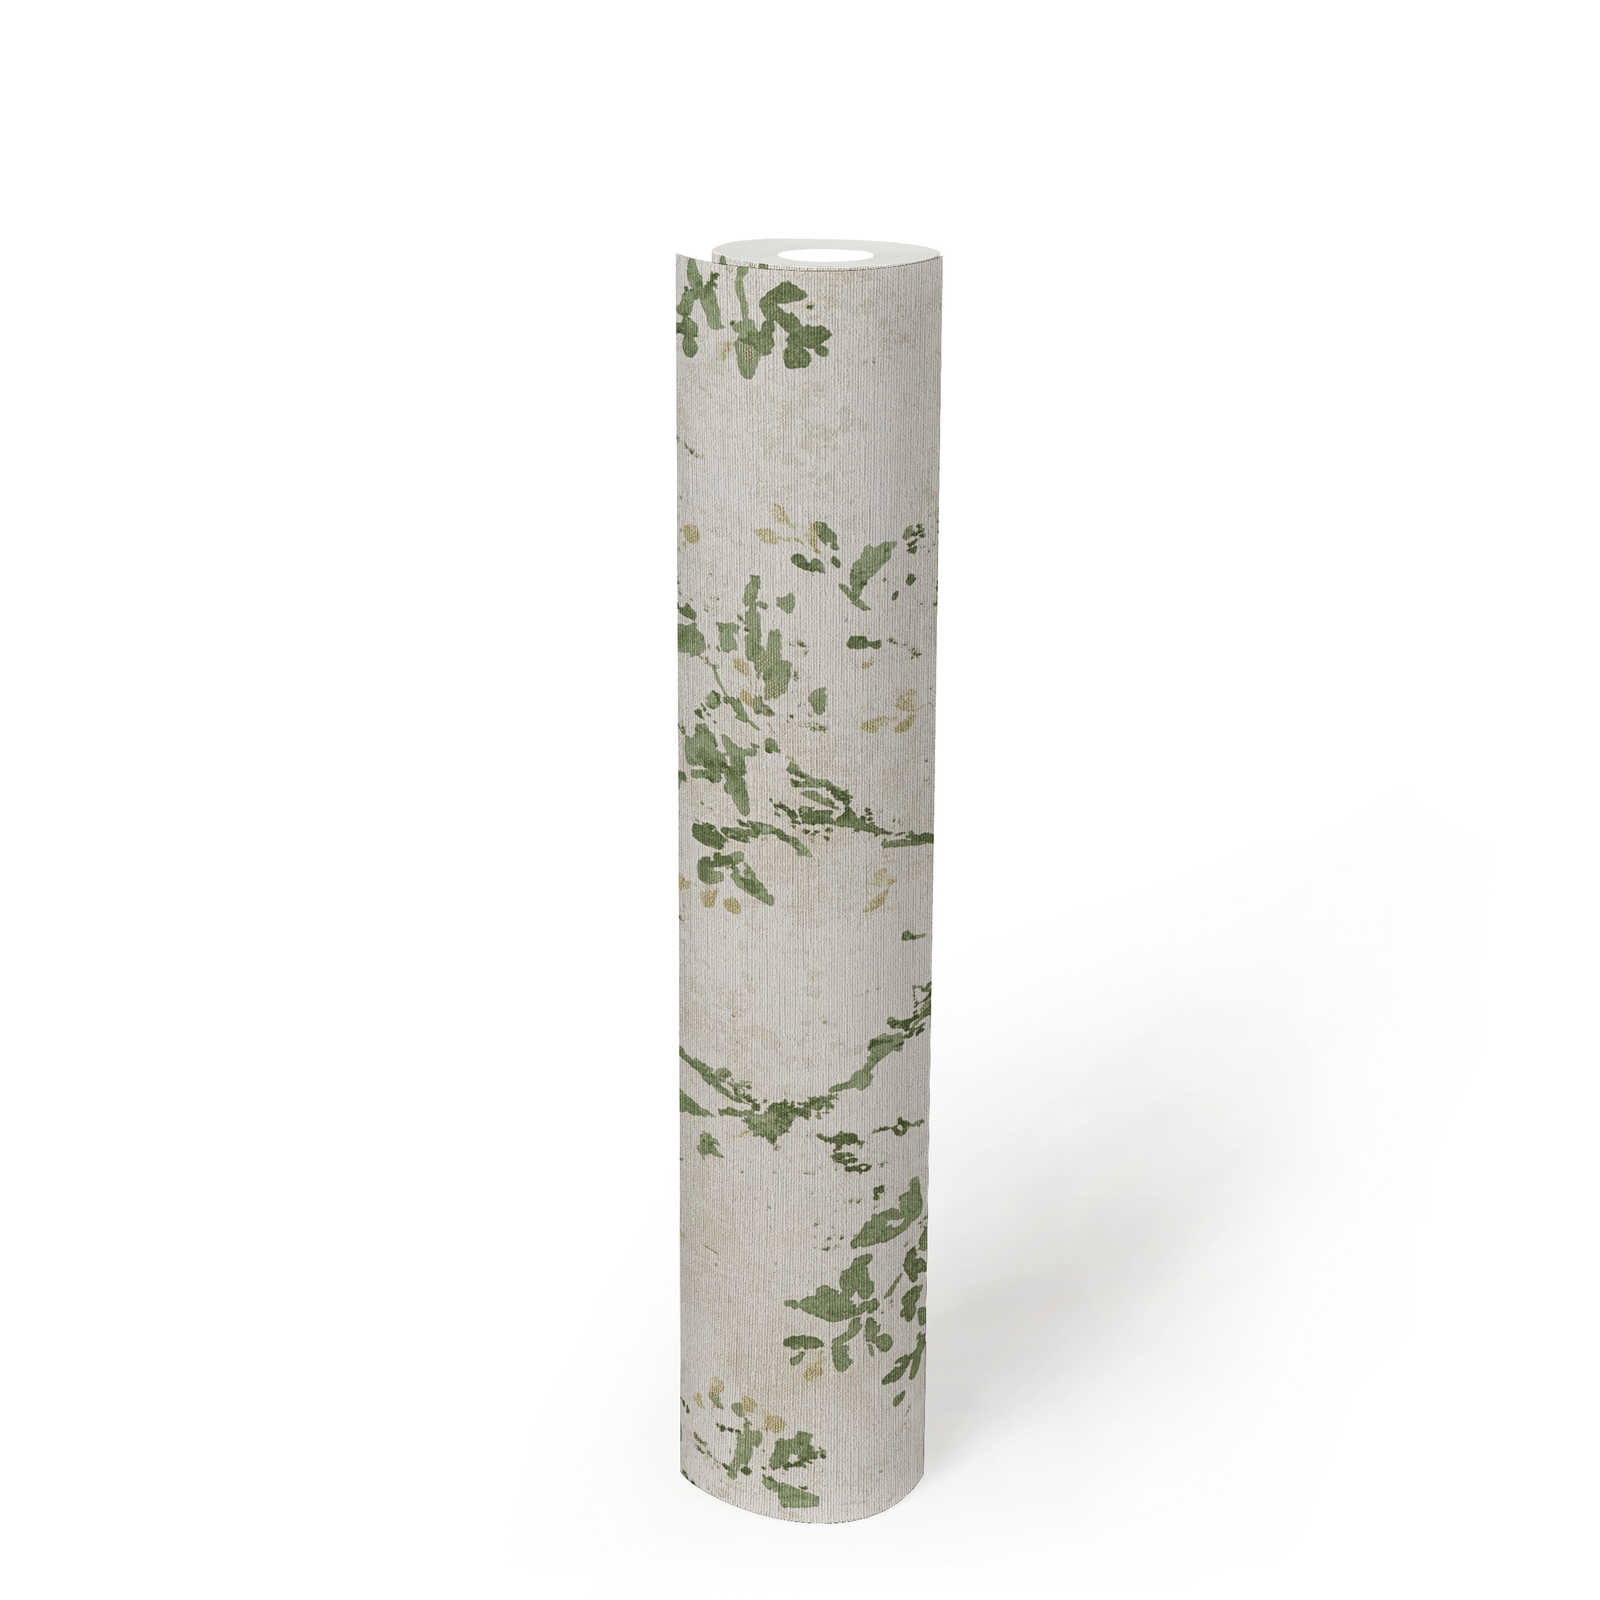             papier peint en papier intissé avec motifs floraux ludiques - beige, vert, or
        